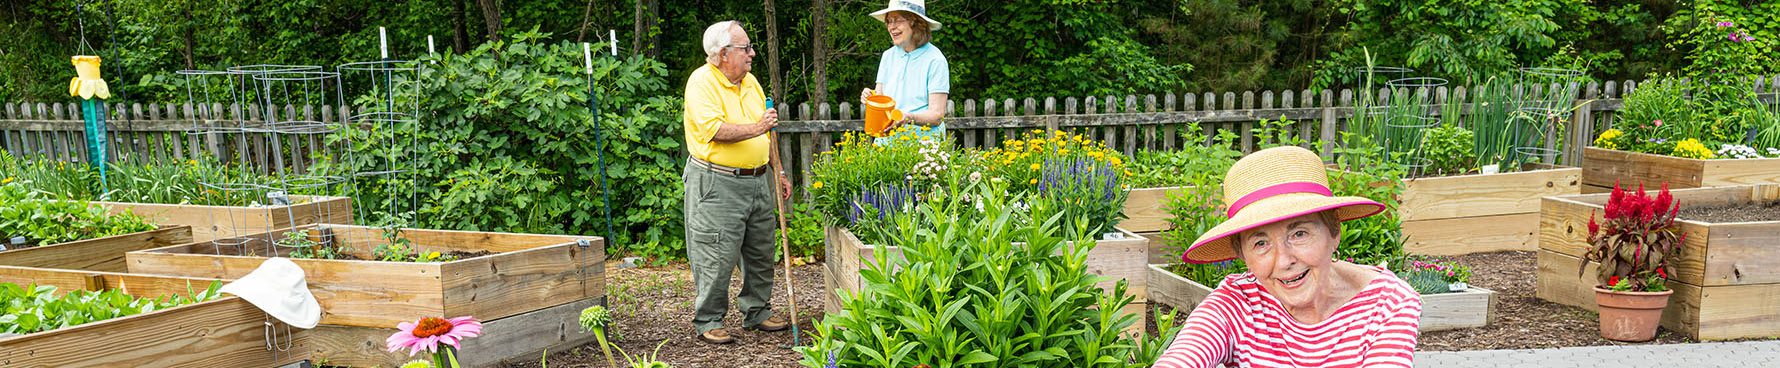 Senior living residents gardening